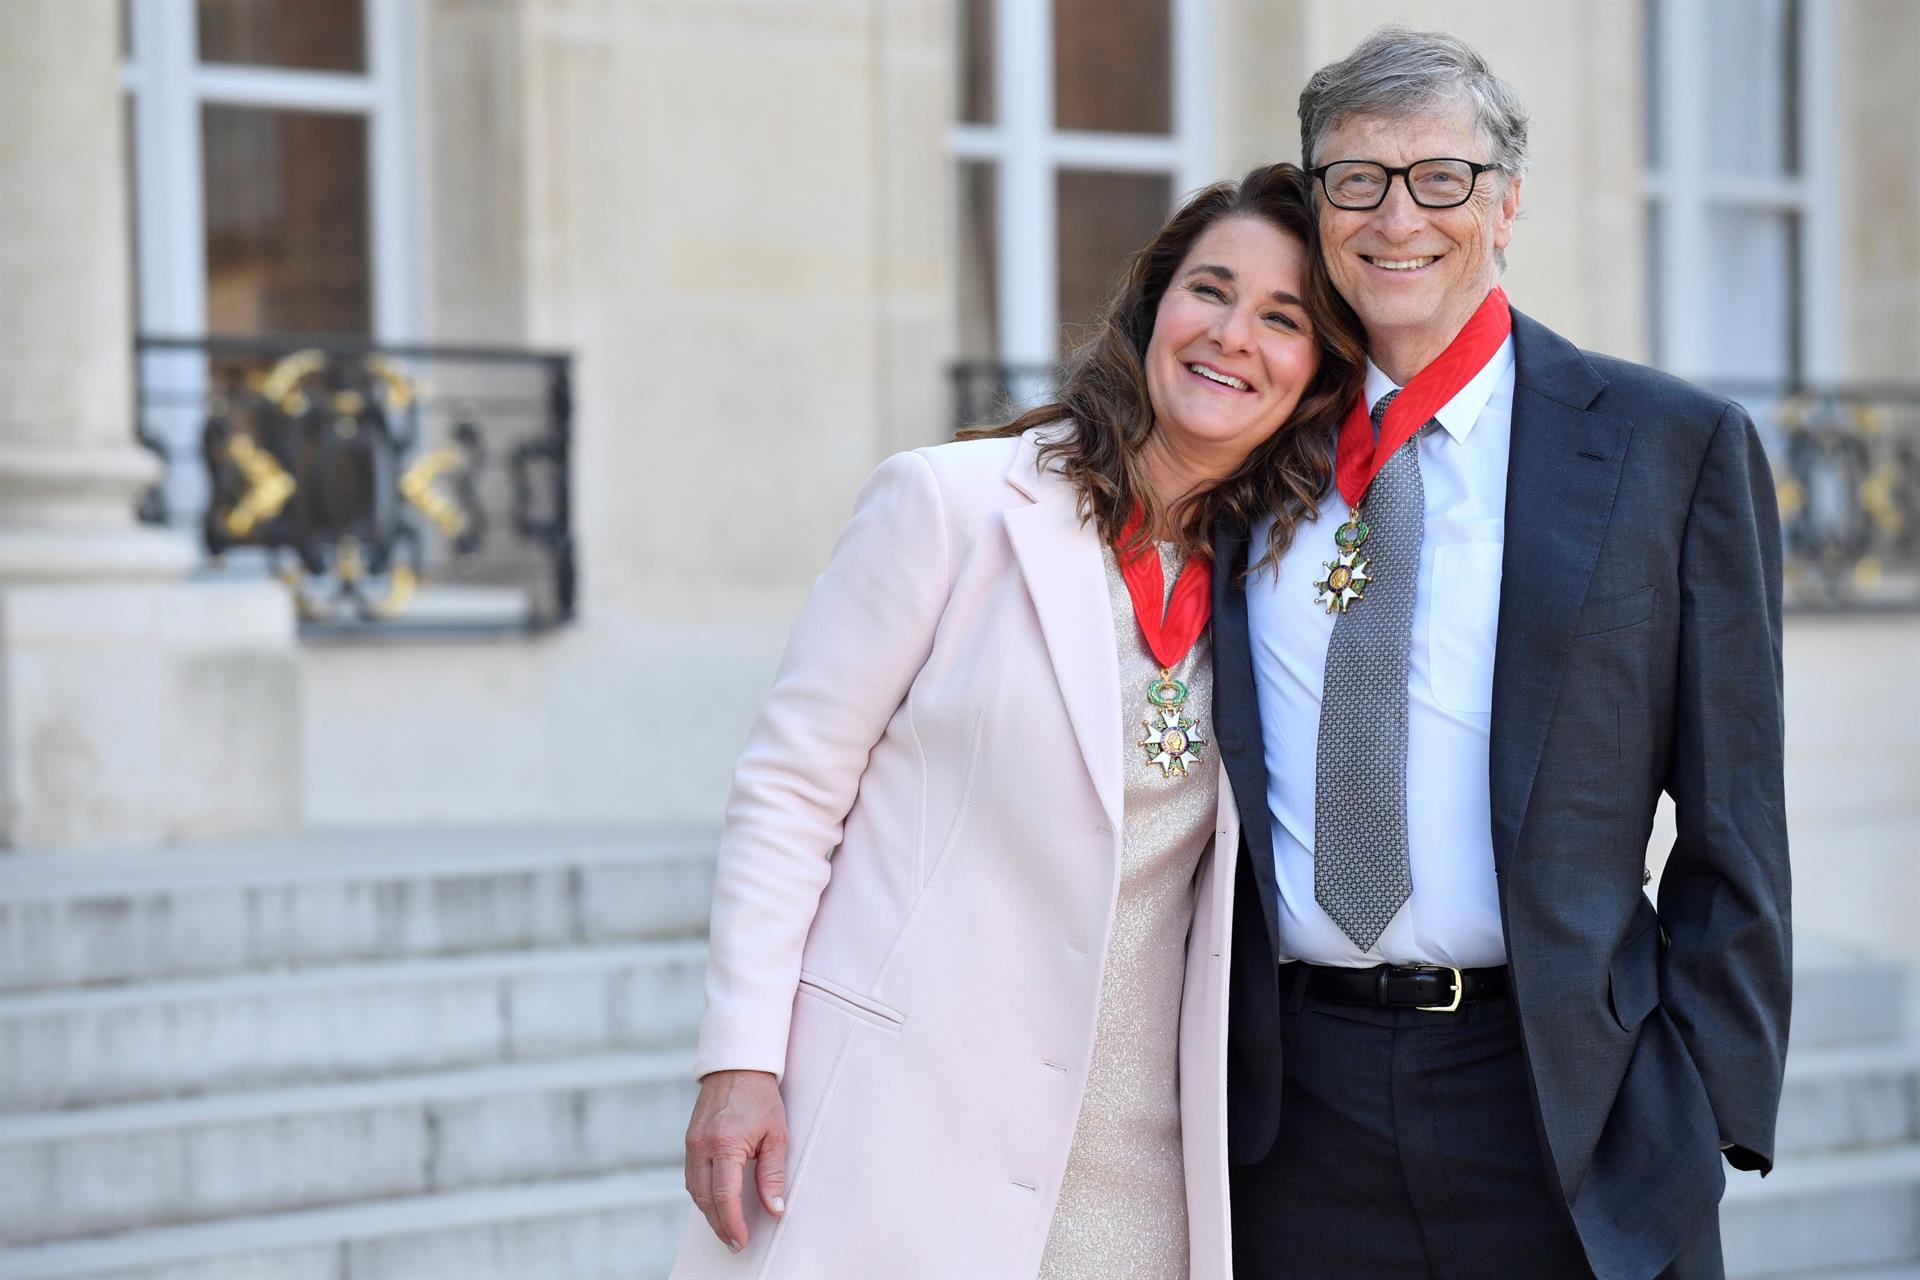 Bill Gates, el magnate estadounidense y cofundador de Microsoft, anunció en redes sociales que pondrá fin a su matrimonio con Melinda Gates después de estar 27 años juntos. (Foto: EFE)